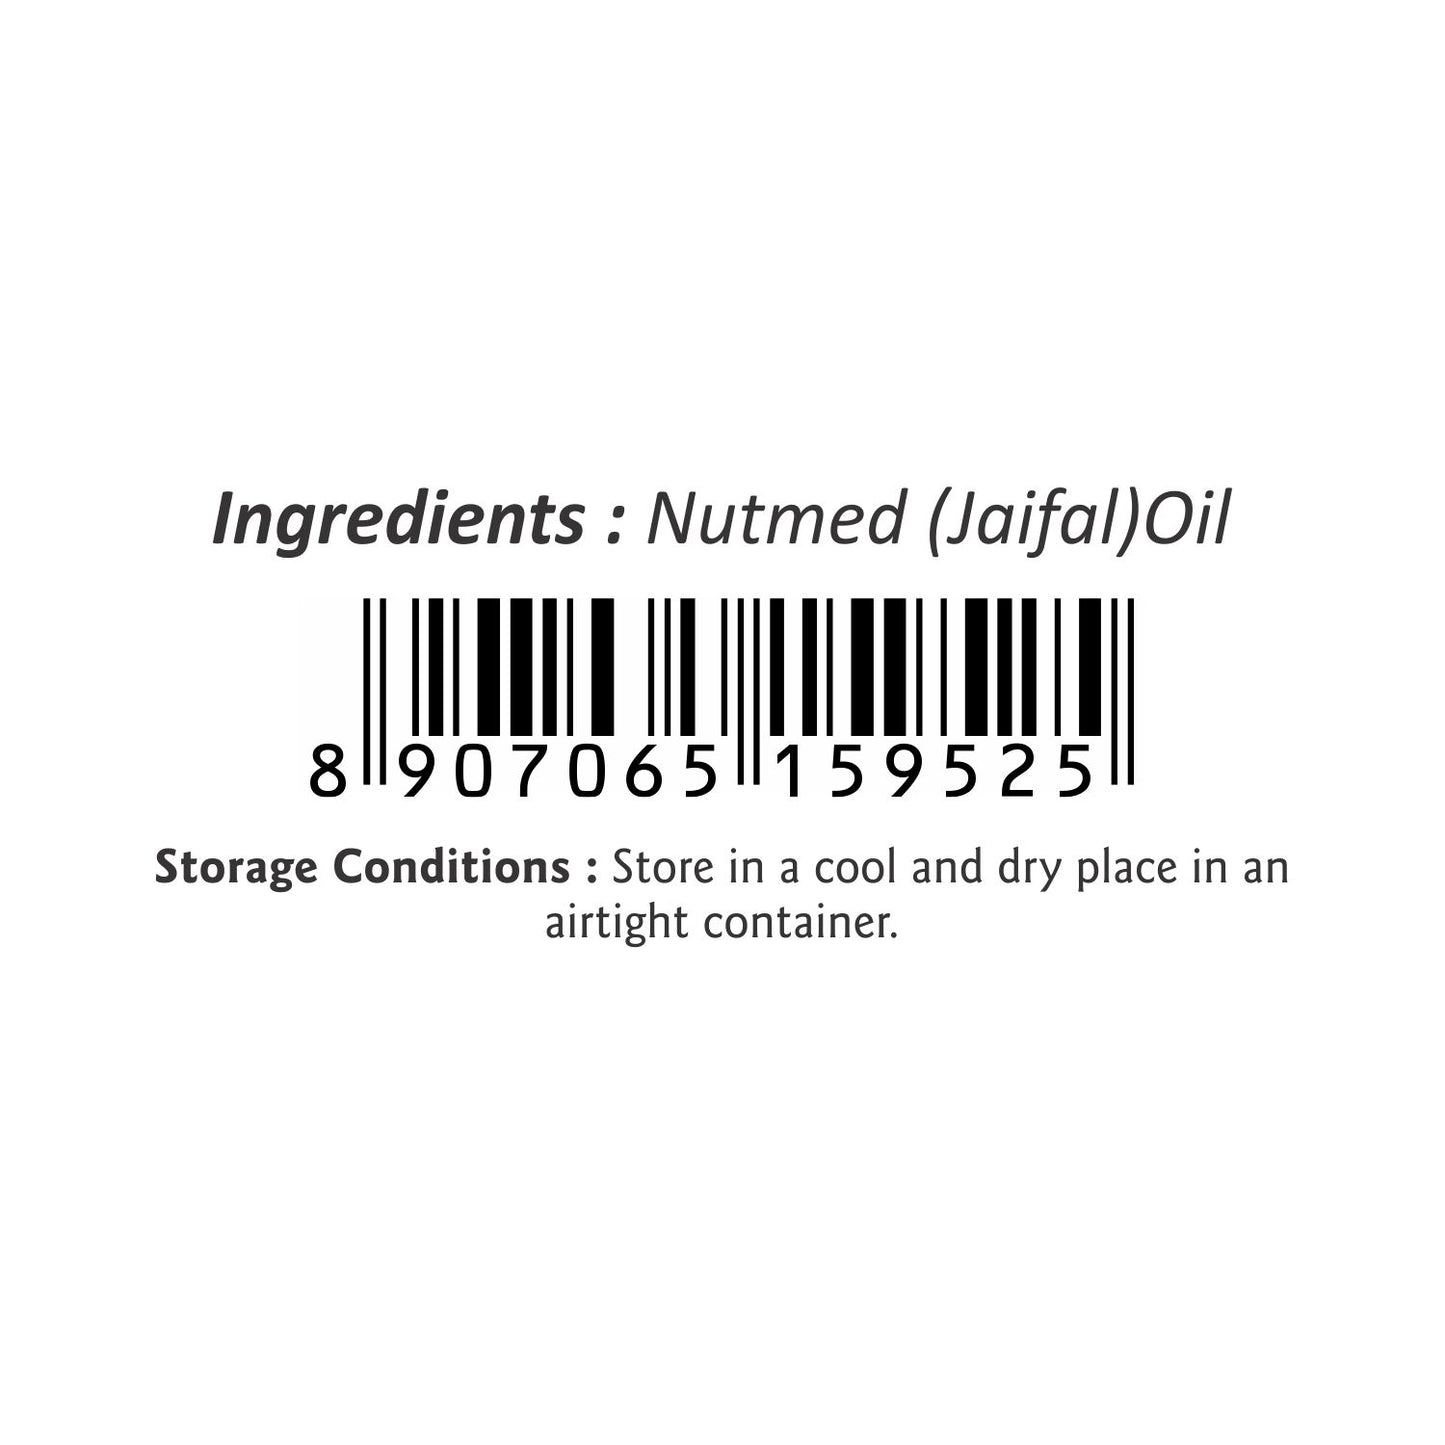 Puramio Nutmeg (Jaifal) Essential Oil [Undiluted]100% Natural & Pure, 30ml